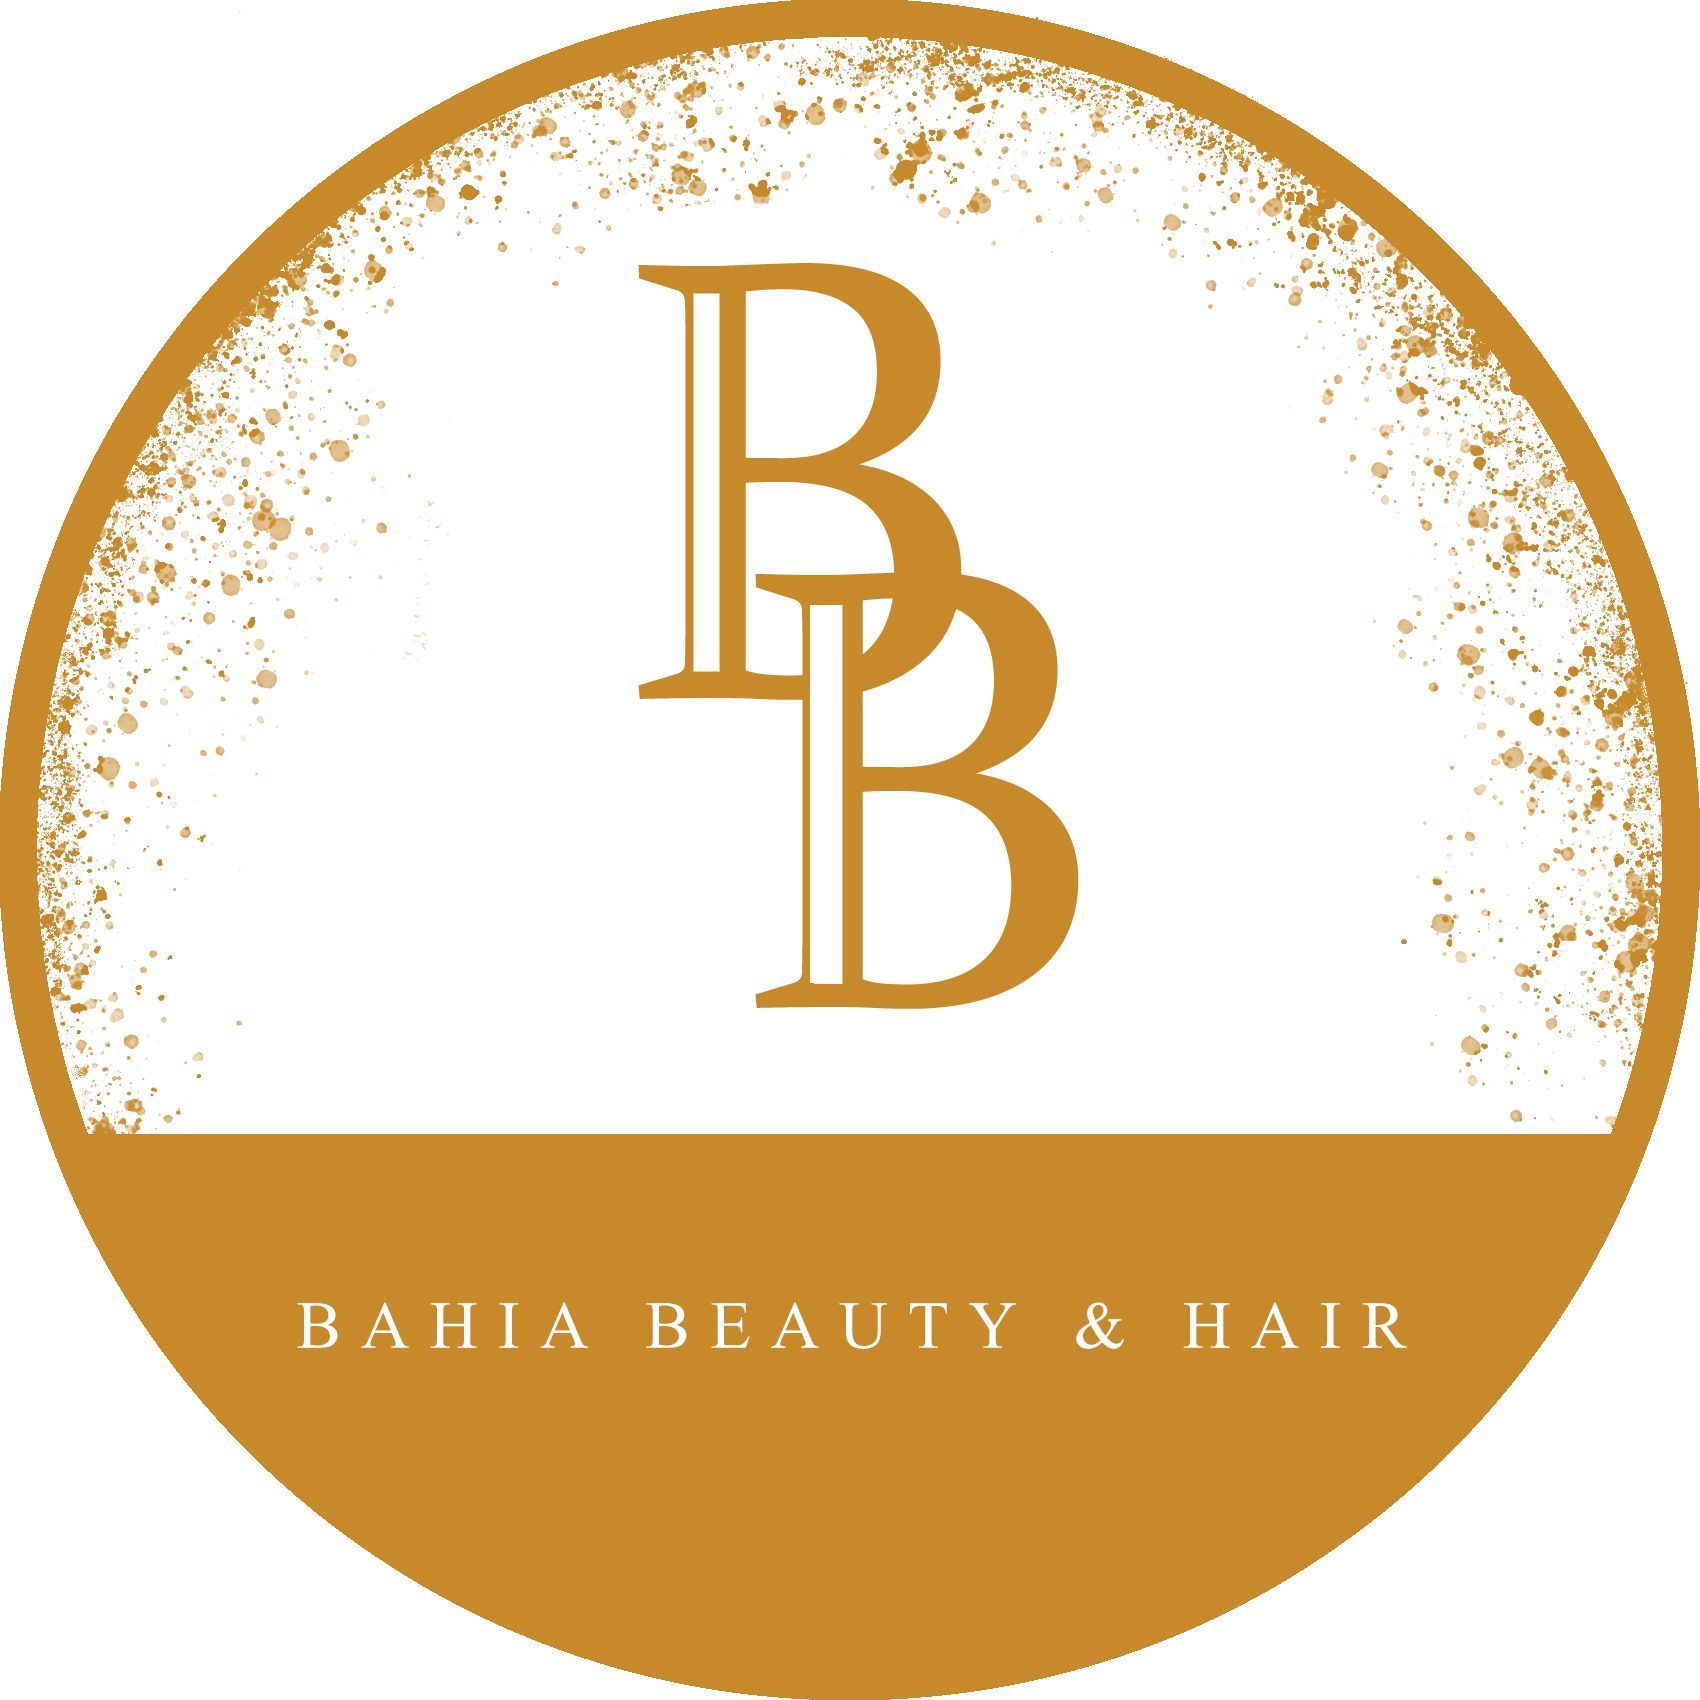 Bahia Beauty & Hair, SKB Beauty, 95A Ynyslyn Road, CF37 5AR, Pontypridd